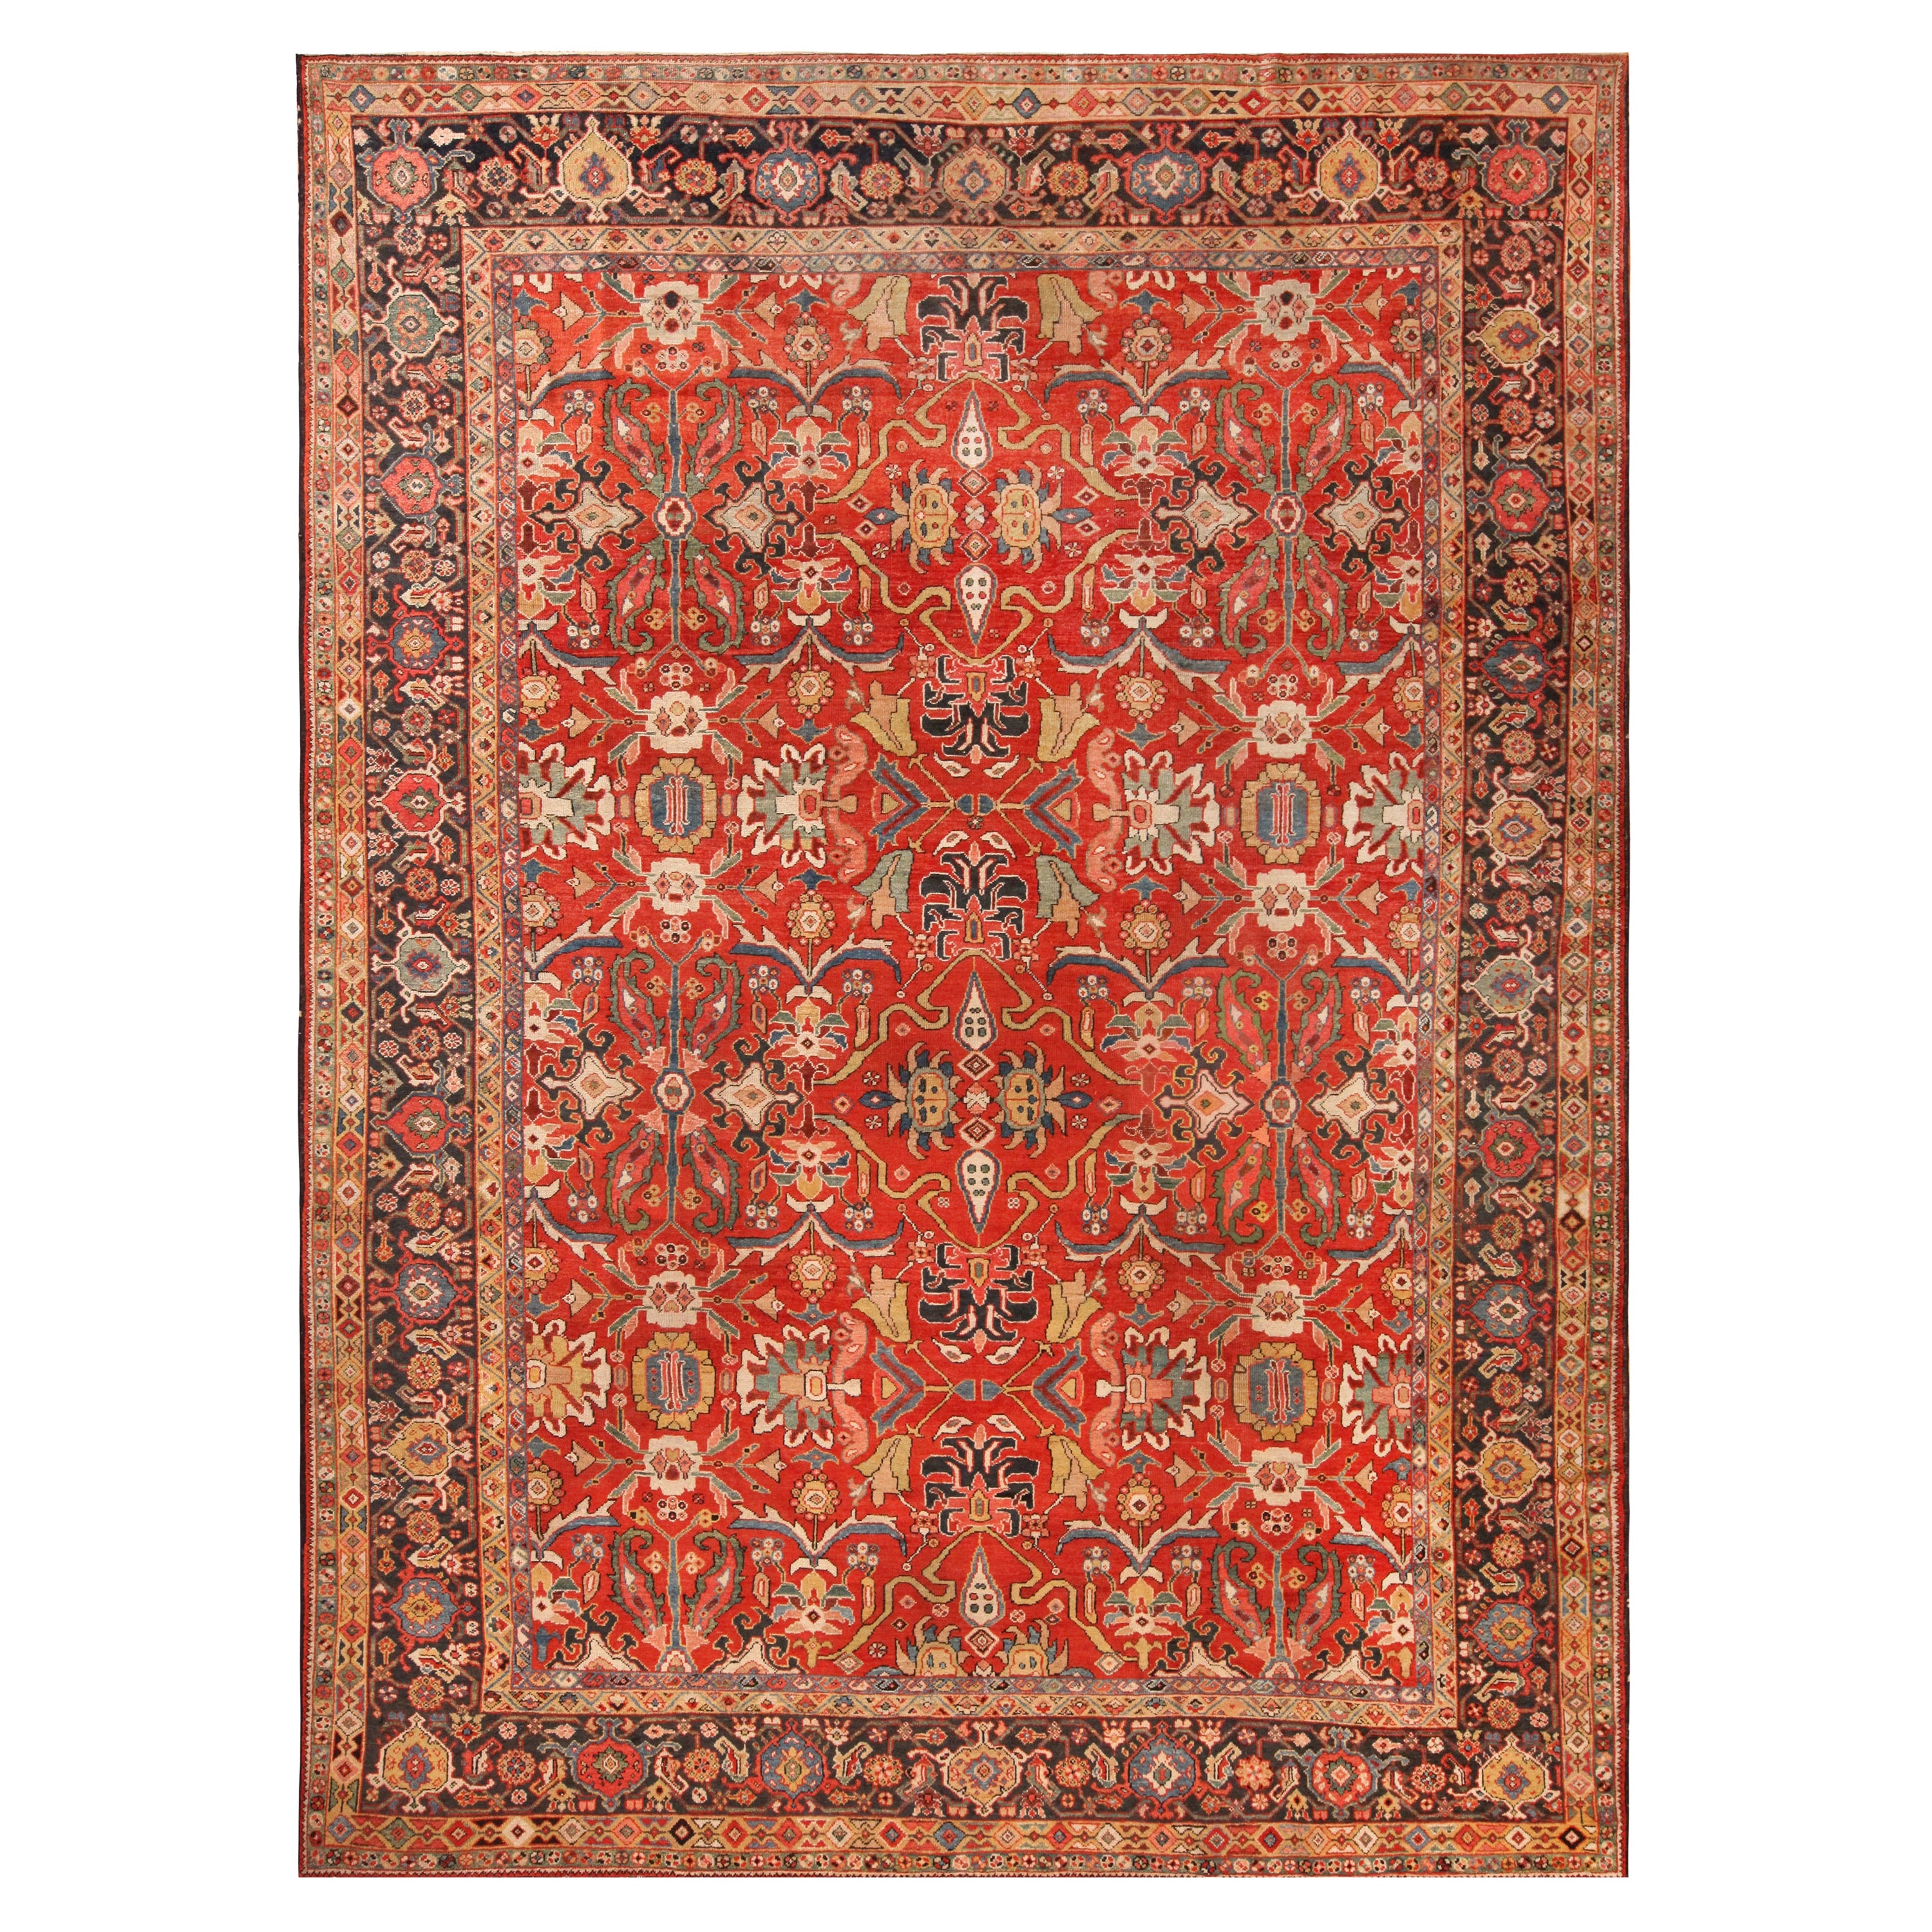 Roter antiker persischer Sultanabad-Teppich. 10 Fuß x 14 Fuß